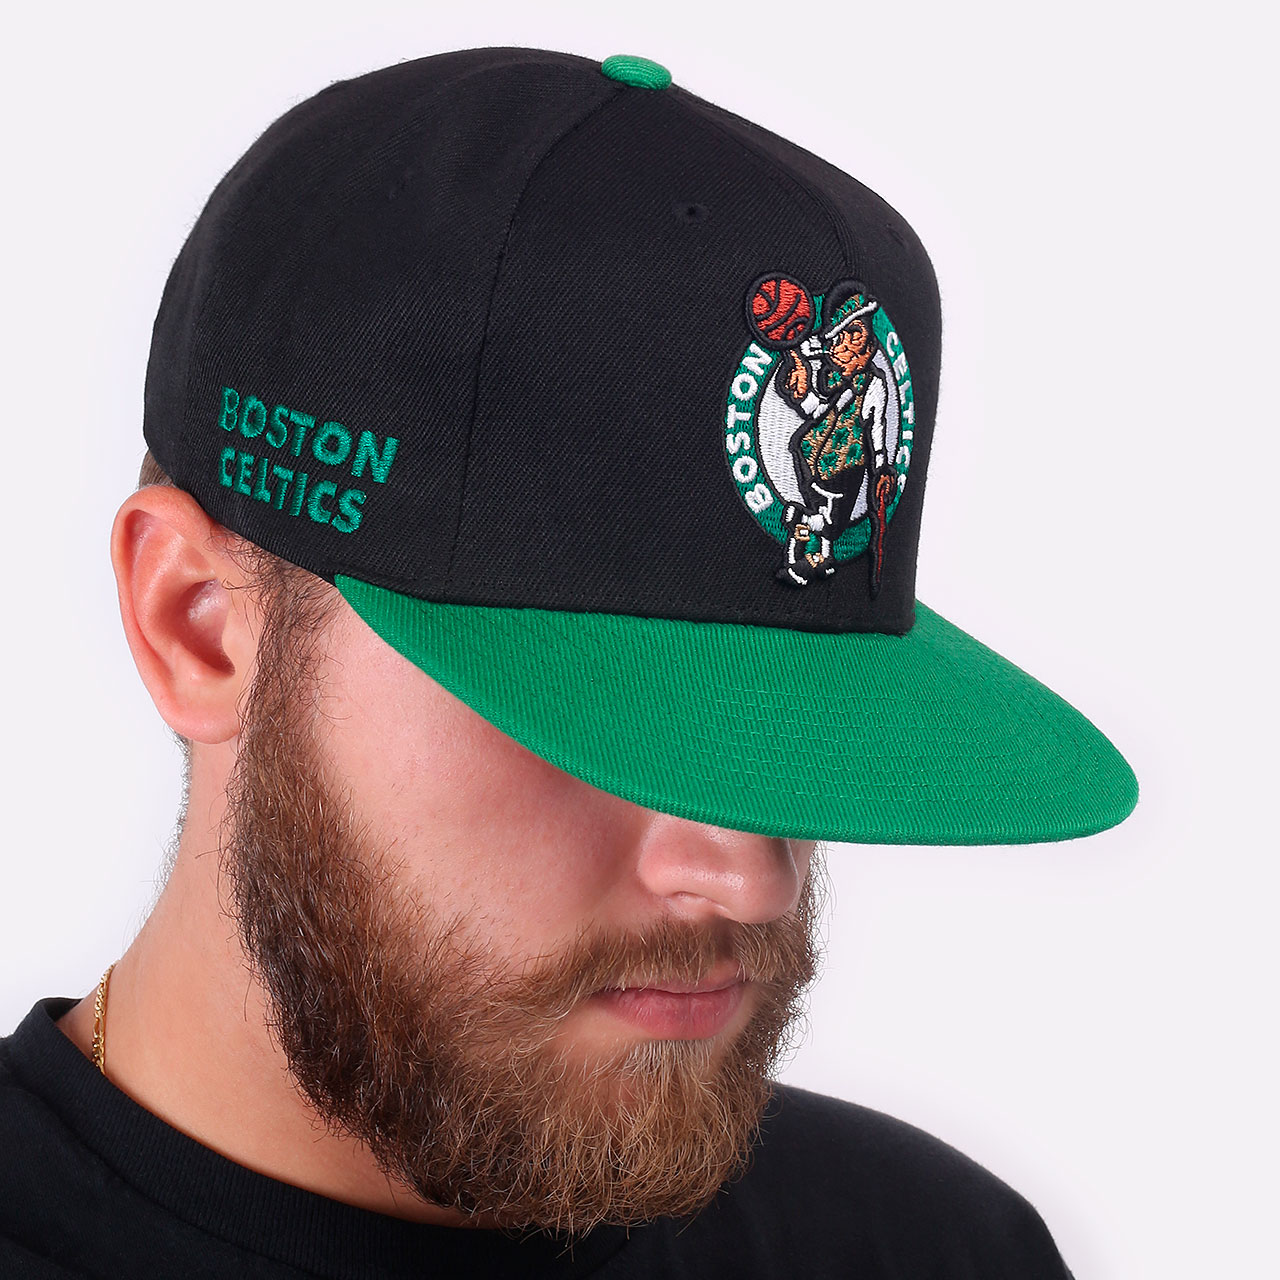  черная кепка Mitchell and ness Boston Celtics 6HSSDX21129-BCEBKGN - цена, описание, фото 1